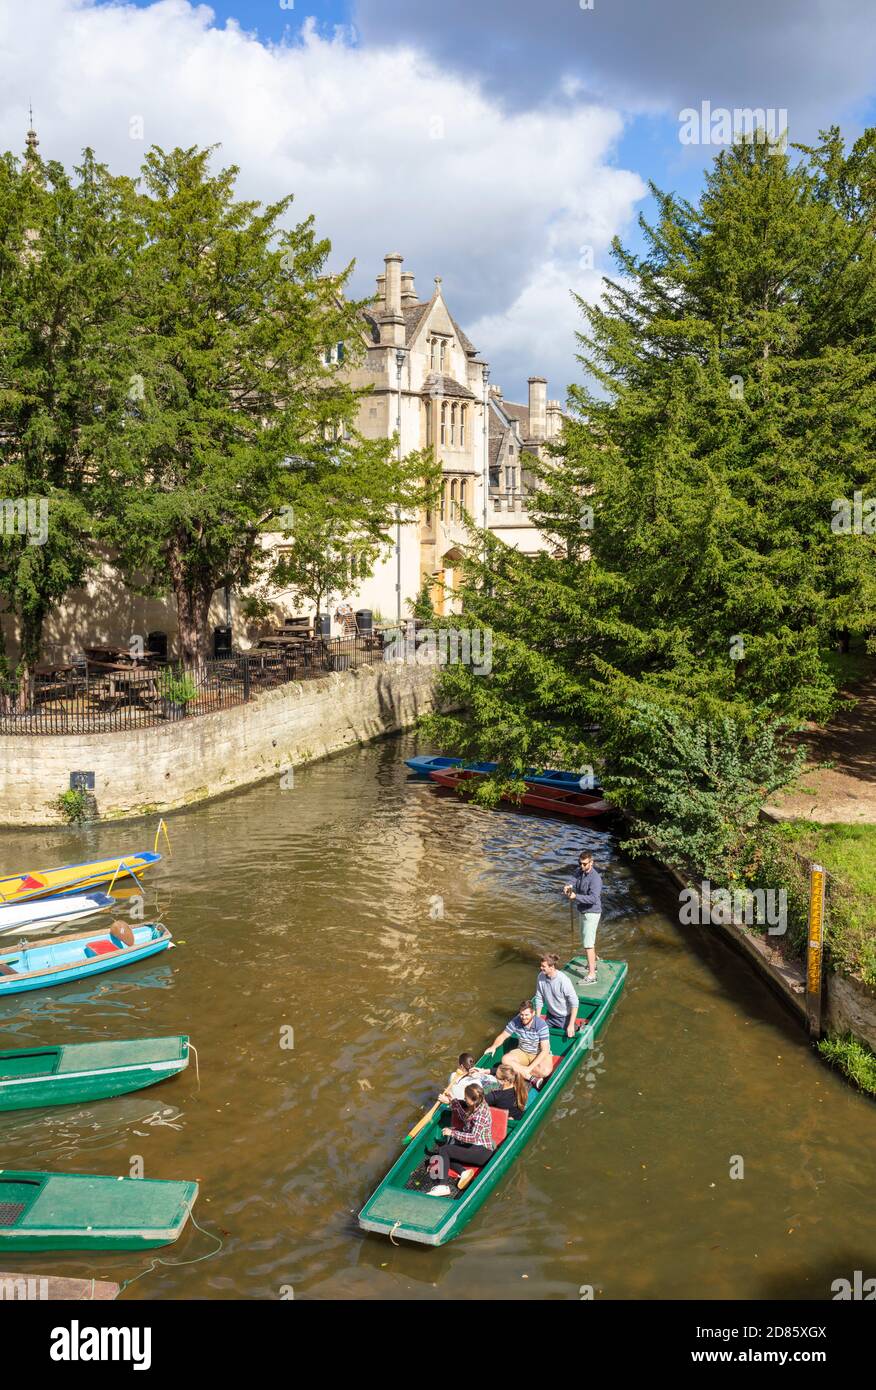 Menschen, die auf Schläge bei Oxford Punting Magdalen Bridge eingestellt Bootshaus Magdalen College auf dem Fluss Cherwell Oxford Oxfordshire England GB Stockfoto